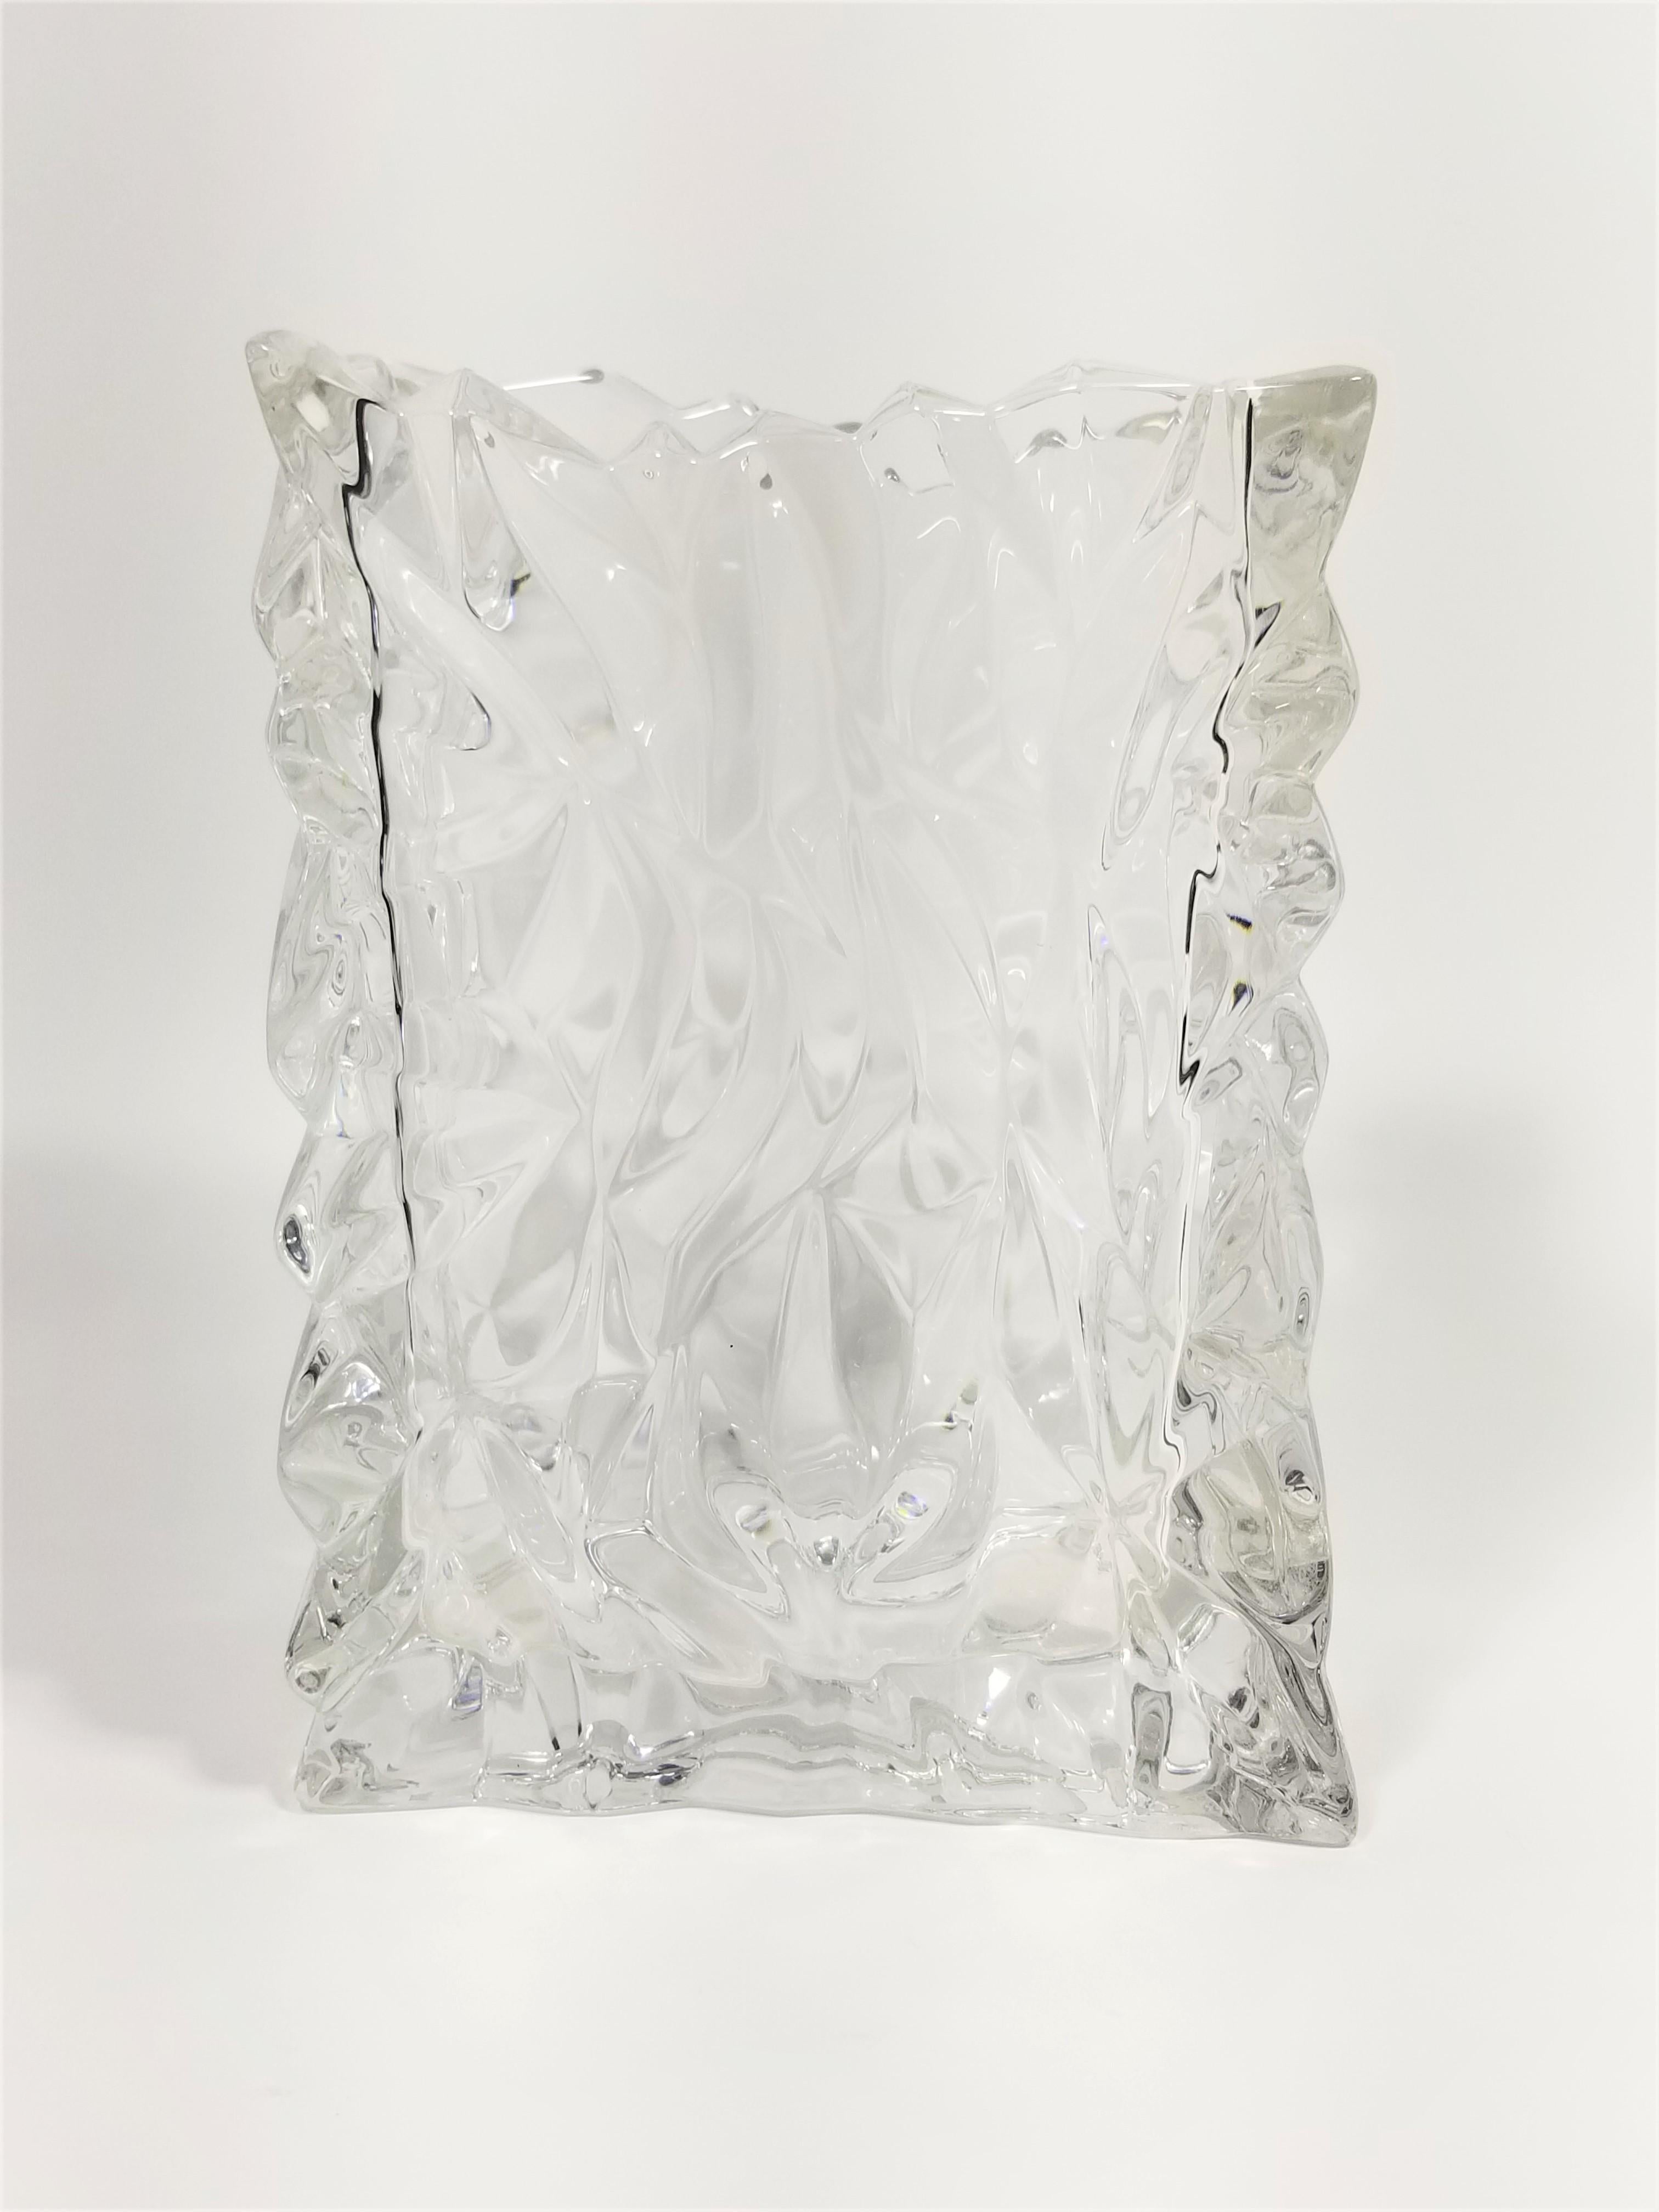 Rosenthal Crystal Vase Brutalist Design Made in Germany For Sale 1